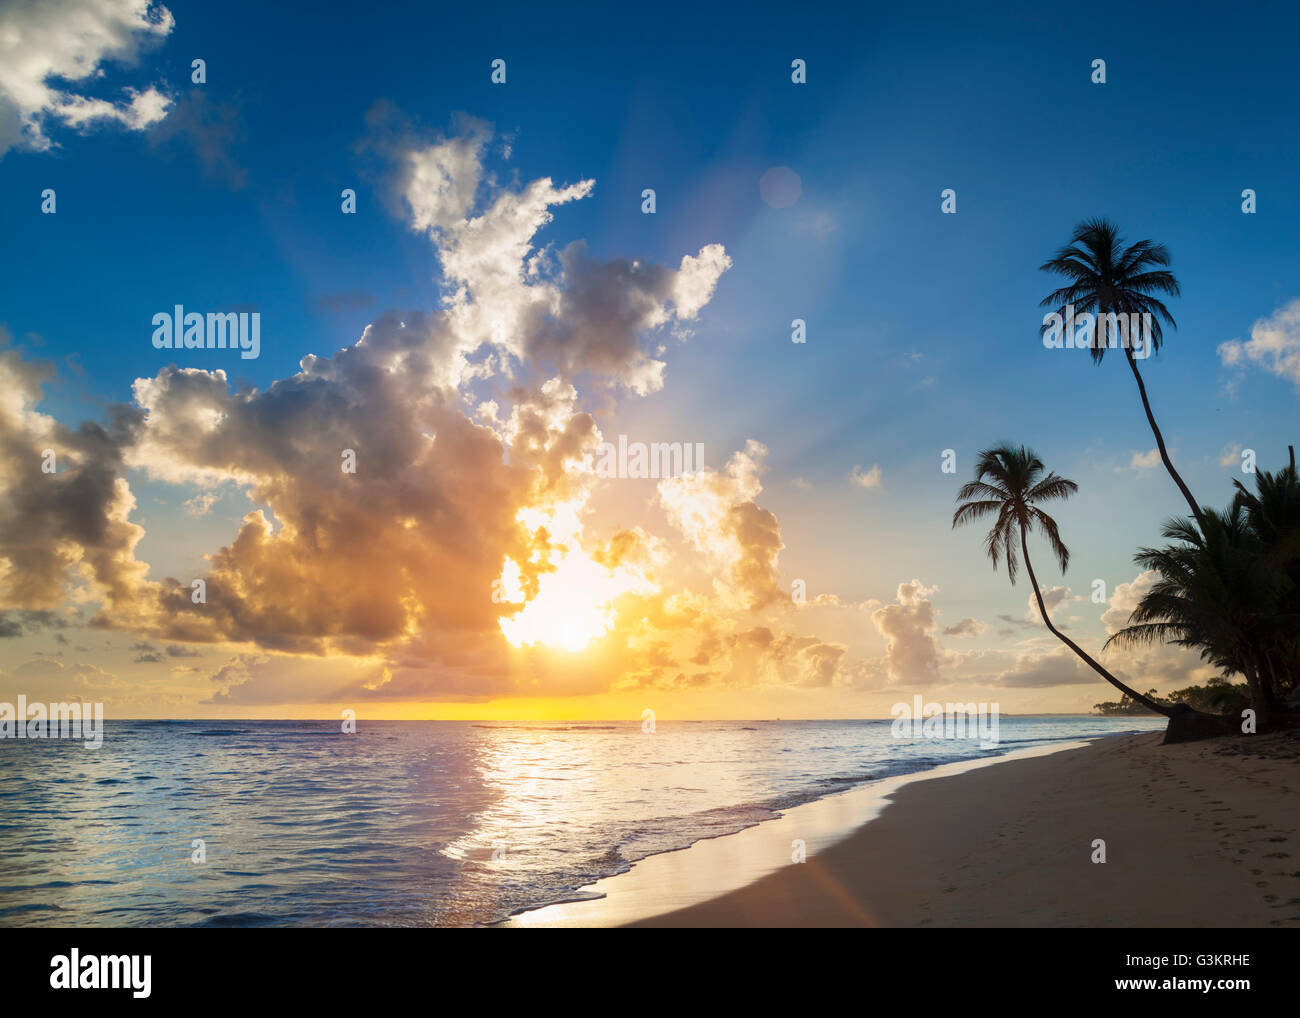 La silhouette de palmiers sur la plage au coucher du soleil, la République dominicaine, les Caraïbes Banque D'Images